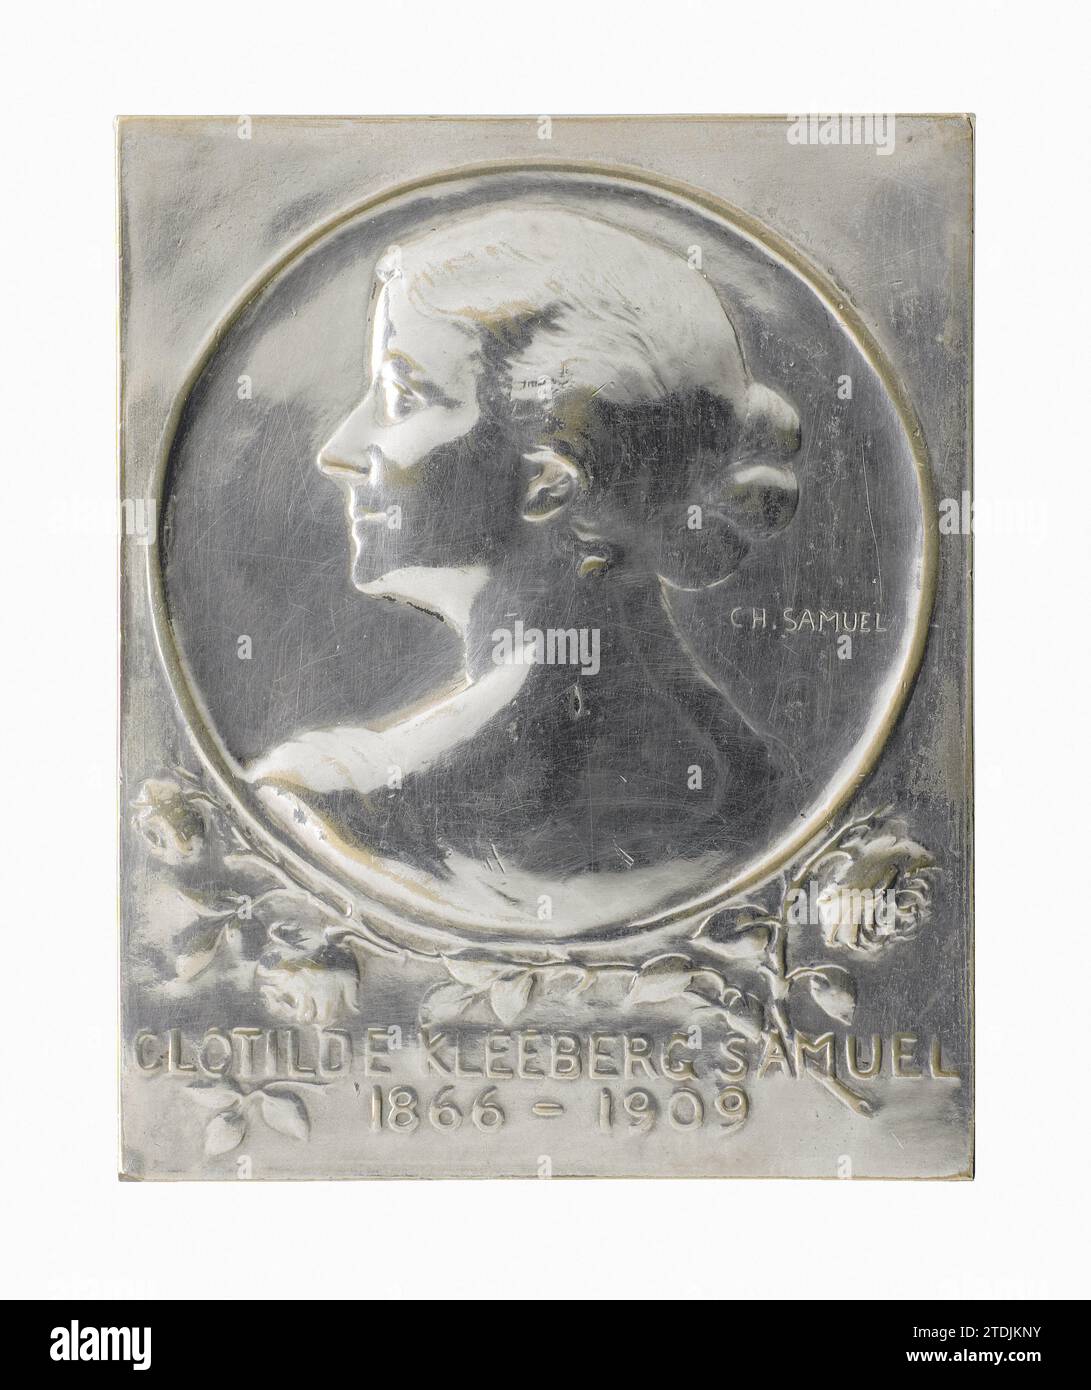 Clotilde Kleeberg-Samuel (1866-1909), 1909 plaque de bronze argenté avec le portrait de Clotilde Kleeberg-Samuel (1866-1909), avec inscription dédicace au dos : Clotildae // Kleeberg-Samvel // Amici Mucisisqve Dediti // Qvod Nervos mire pepvvvlit // C.P. // carolam conigem ///////// Carolam samvel congis. La personne représentée est montrée en bas-relief mince et vue sur son dos et son épaule. Bronze bruxellois (métal). Fonte d'argent (métal) plaque de bronze argenté avec le portrait de Clotilde Kleeberg-Samuel (1866-1909), avec inscription dédicace au dos: Banque D'Images